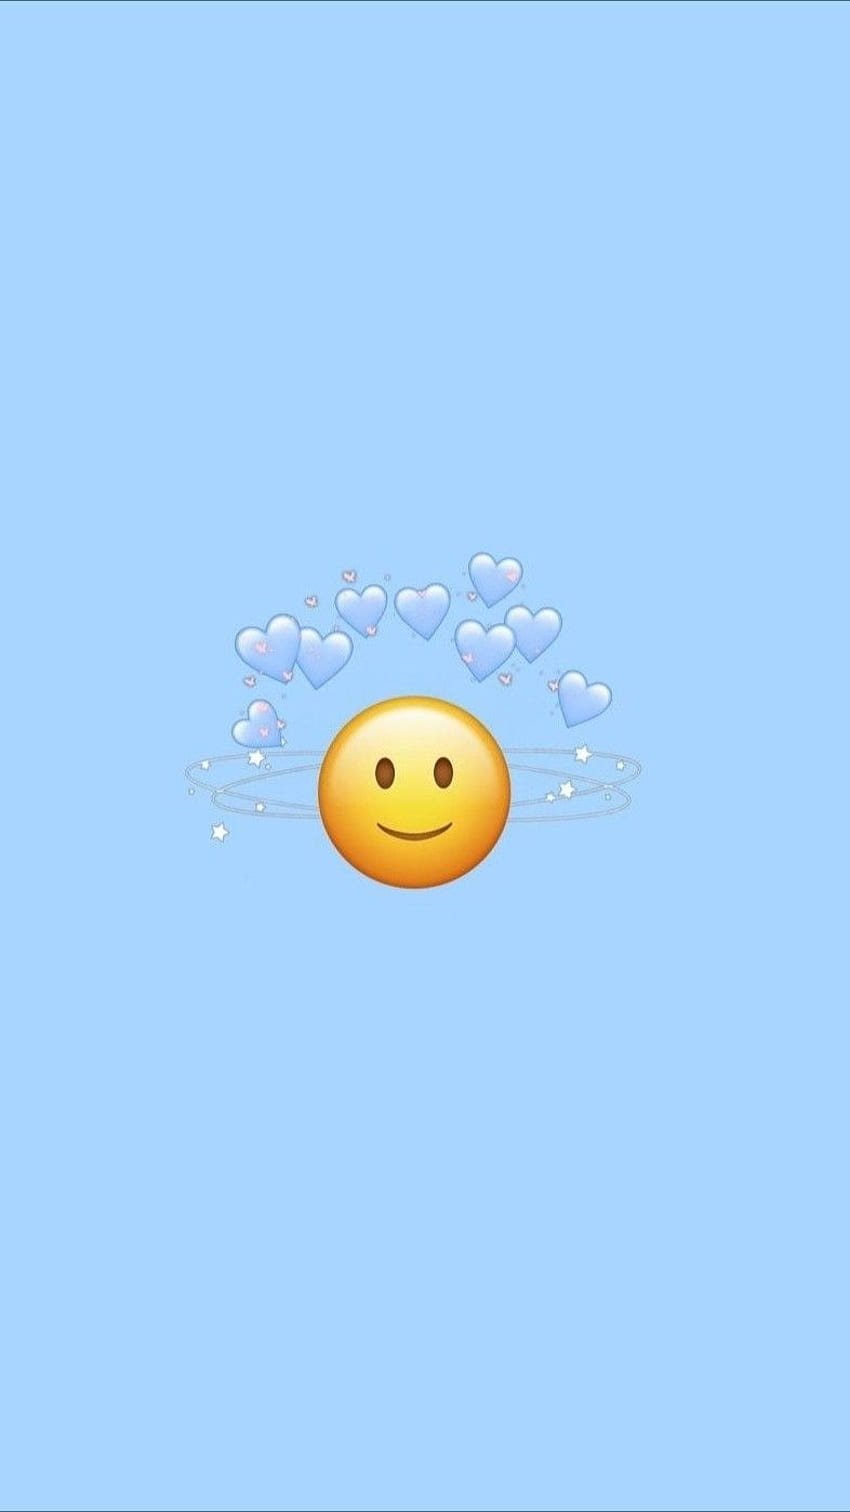 Cùng chiêm ngưỡng những emoji siêu dễ thương trên điện thoại iPhone nào! Chúng tôi tổng hợp những biểu tượng cảm xúc cực đáng yêu để giúp bạn truyền tải thông điệp một cách thú vị. Nhấn vào hình ảnh để xem chi tiết hơn nhé! 